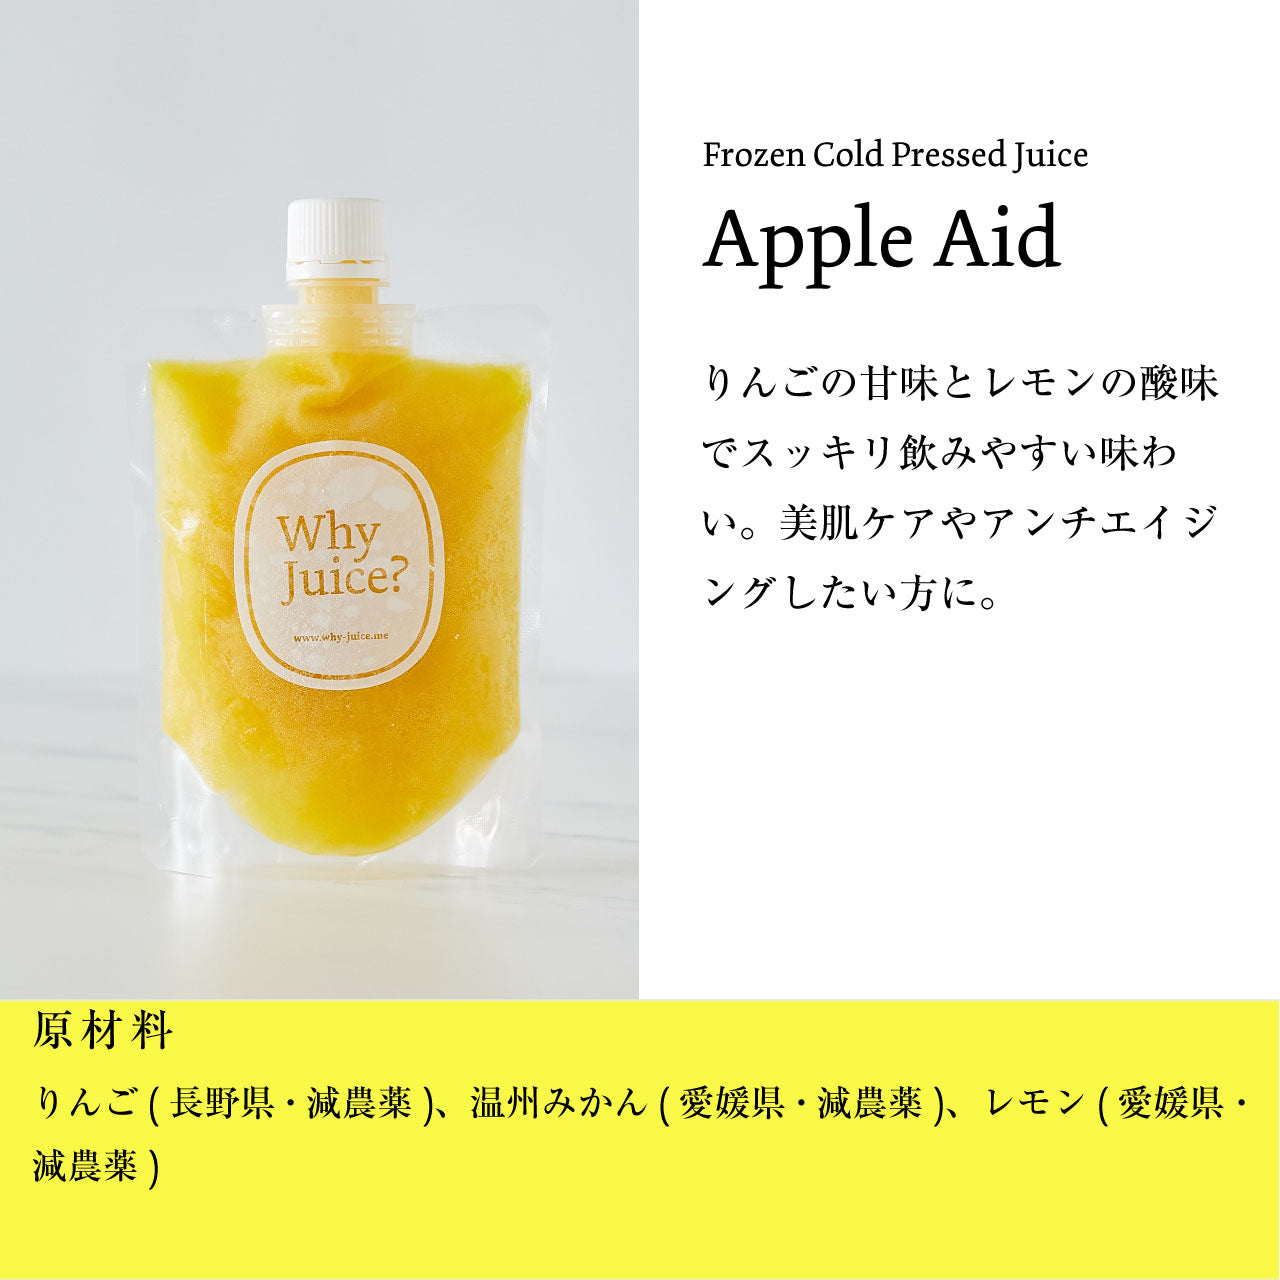 【ジュースクレンズ】Frozen Cold Pressed Juice 【Apple Aid】3本セット【コールドプレスジュース】